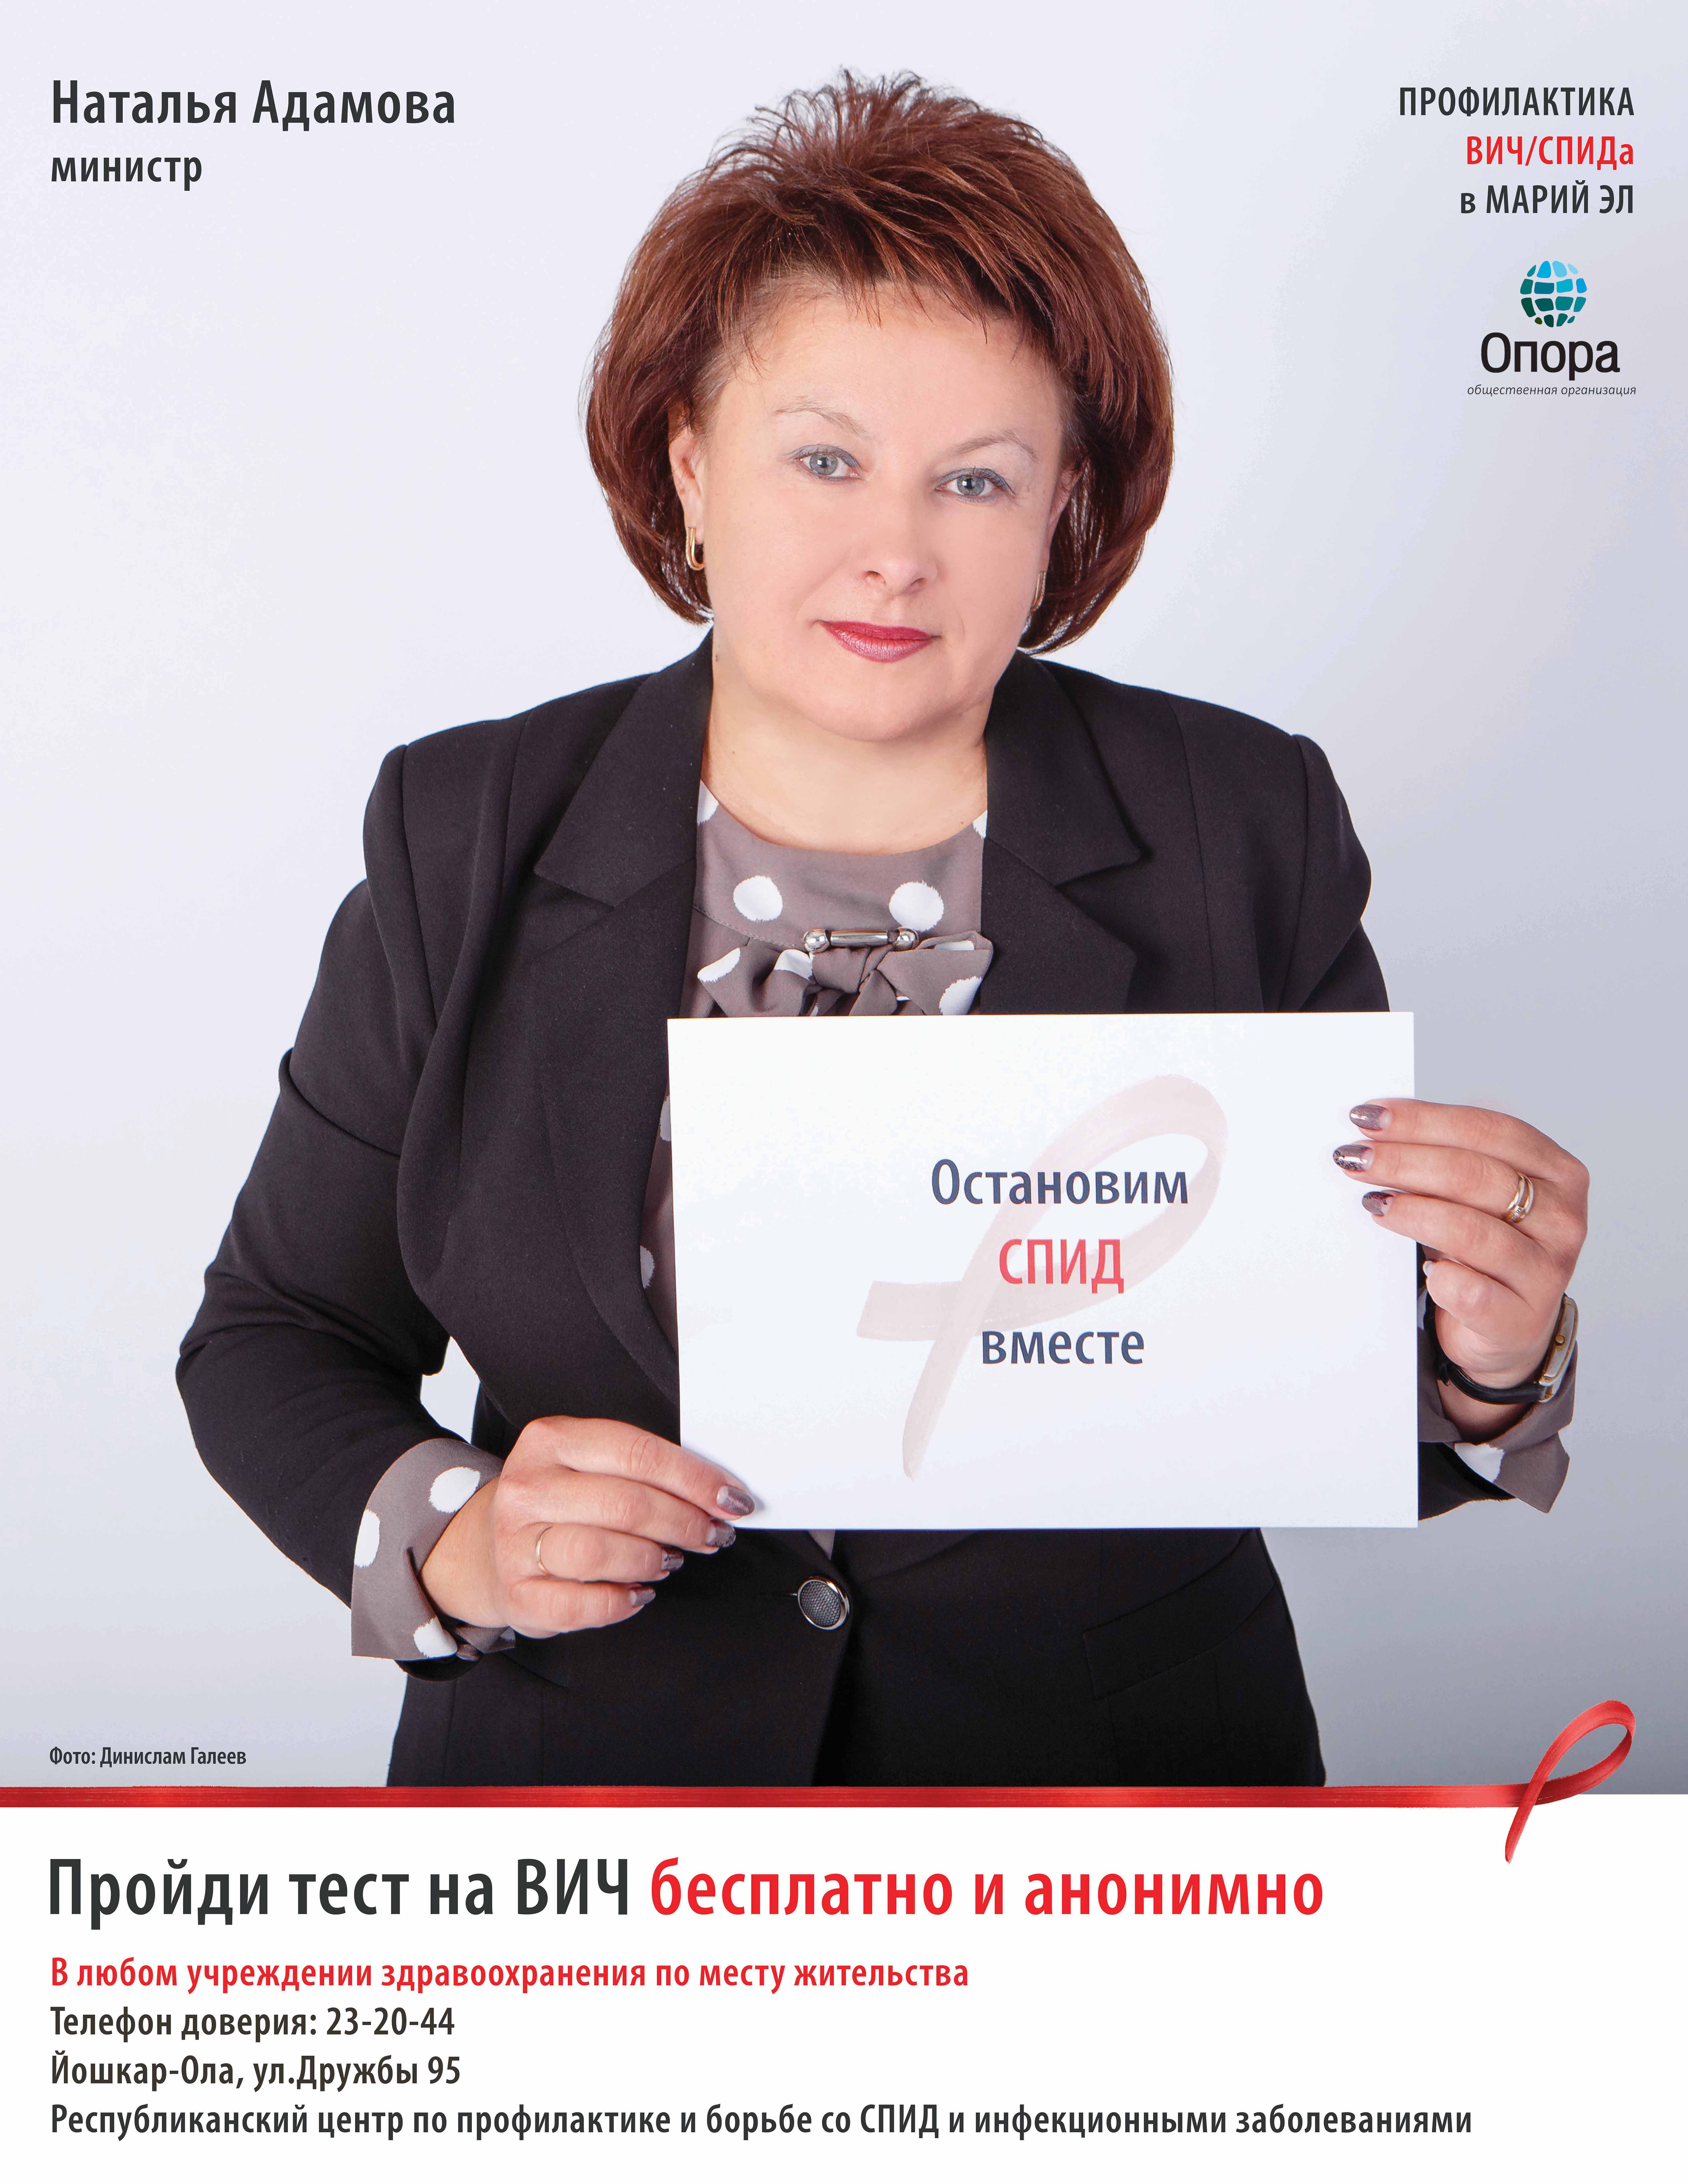 Адамова Наталья Васильевна министр образования РМЭ